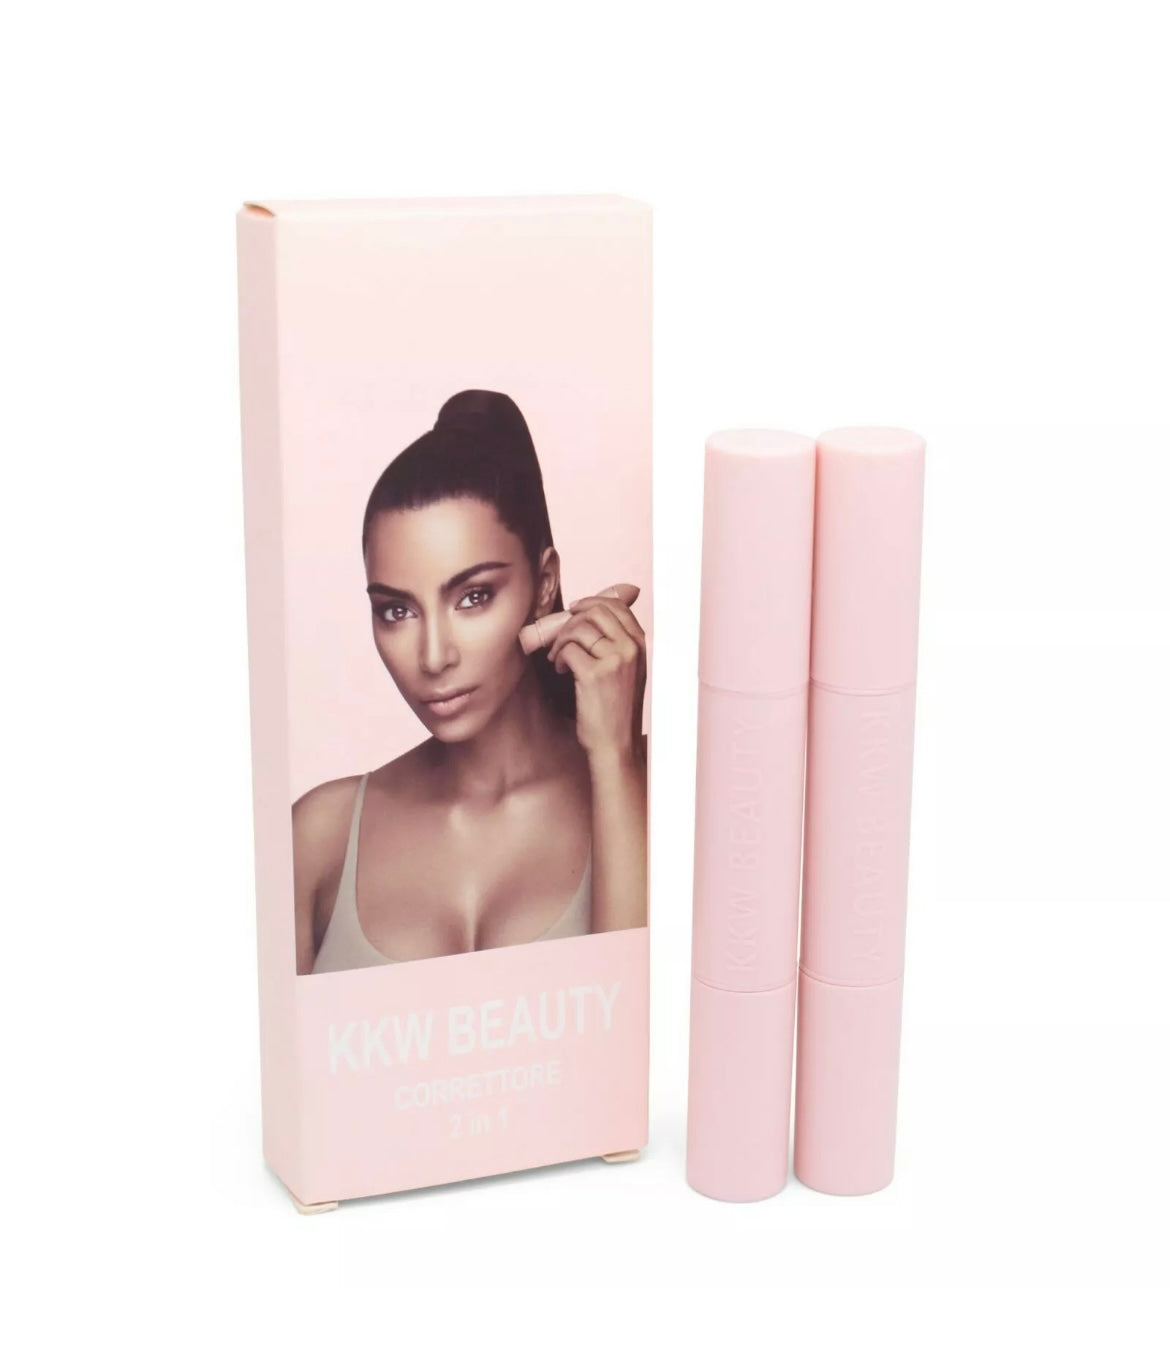 Official Kim Kardashian Crème Contour & Highlight Set